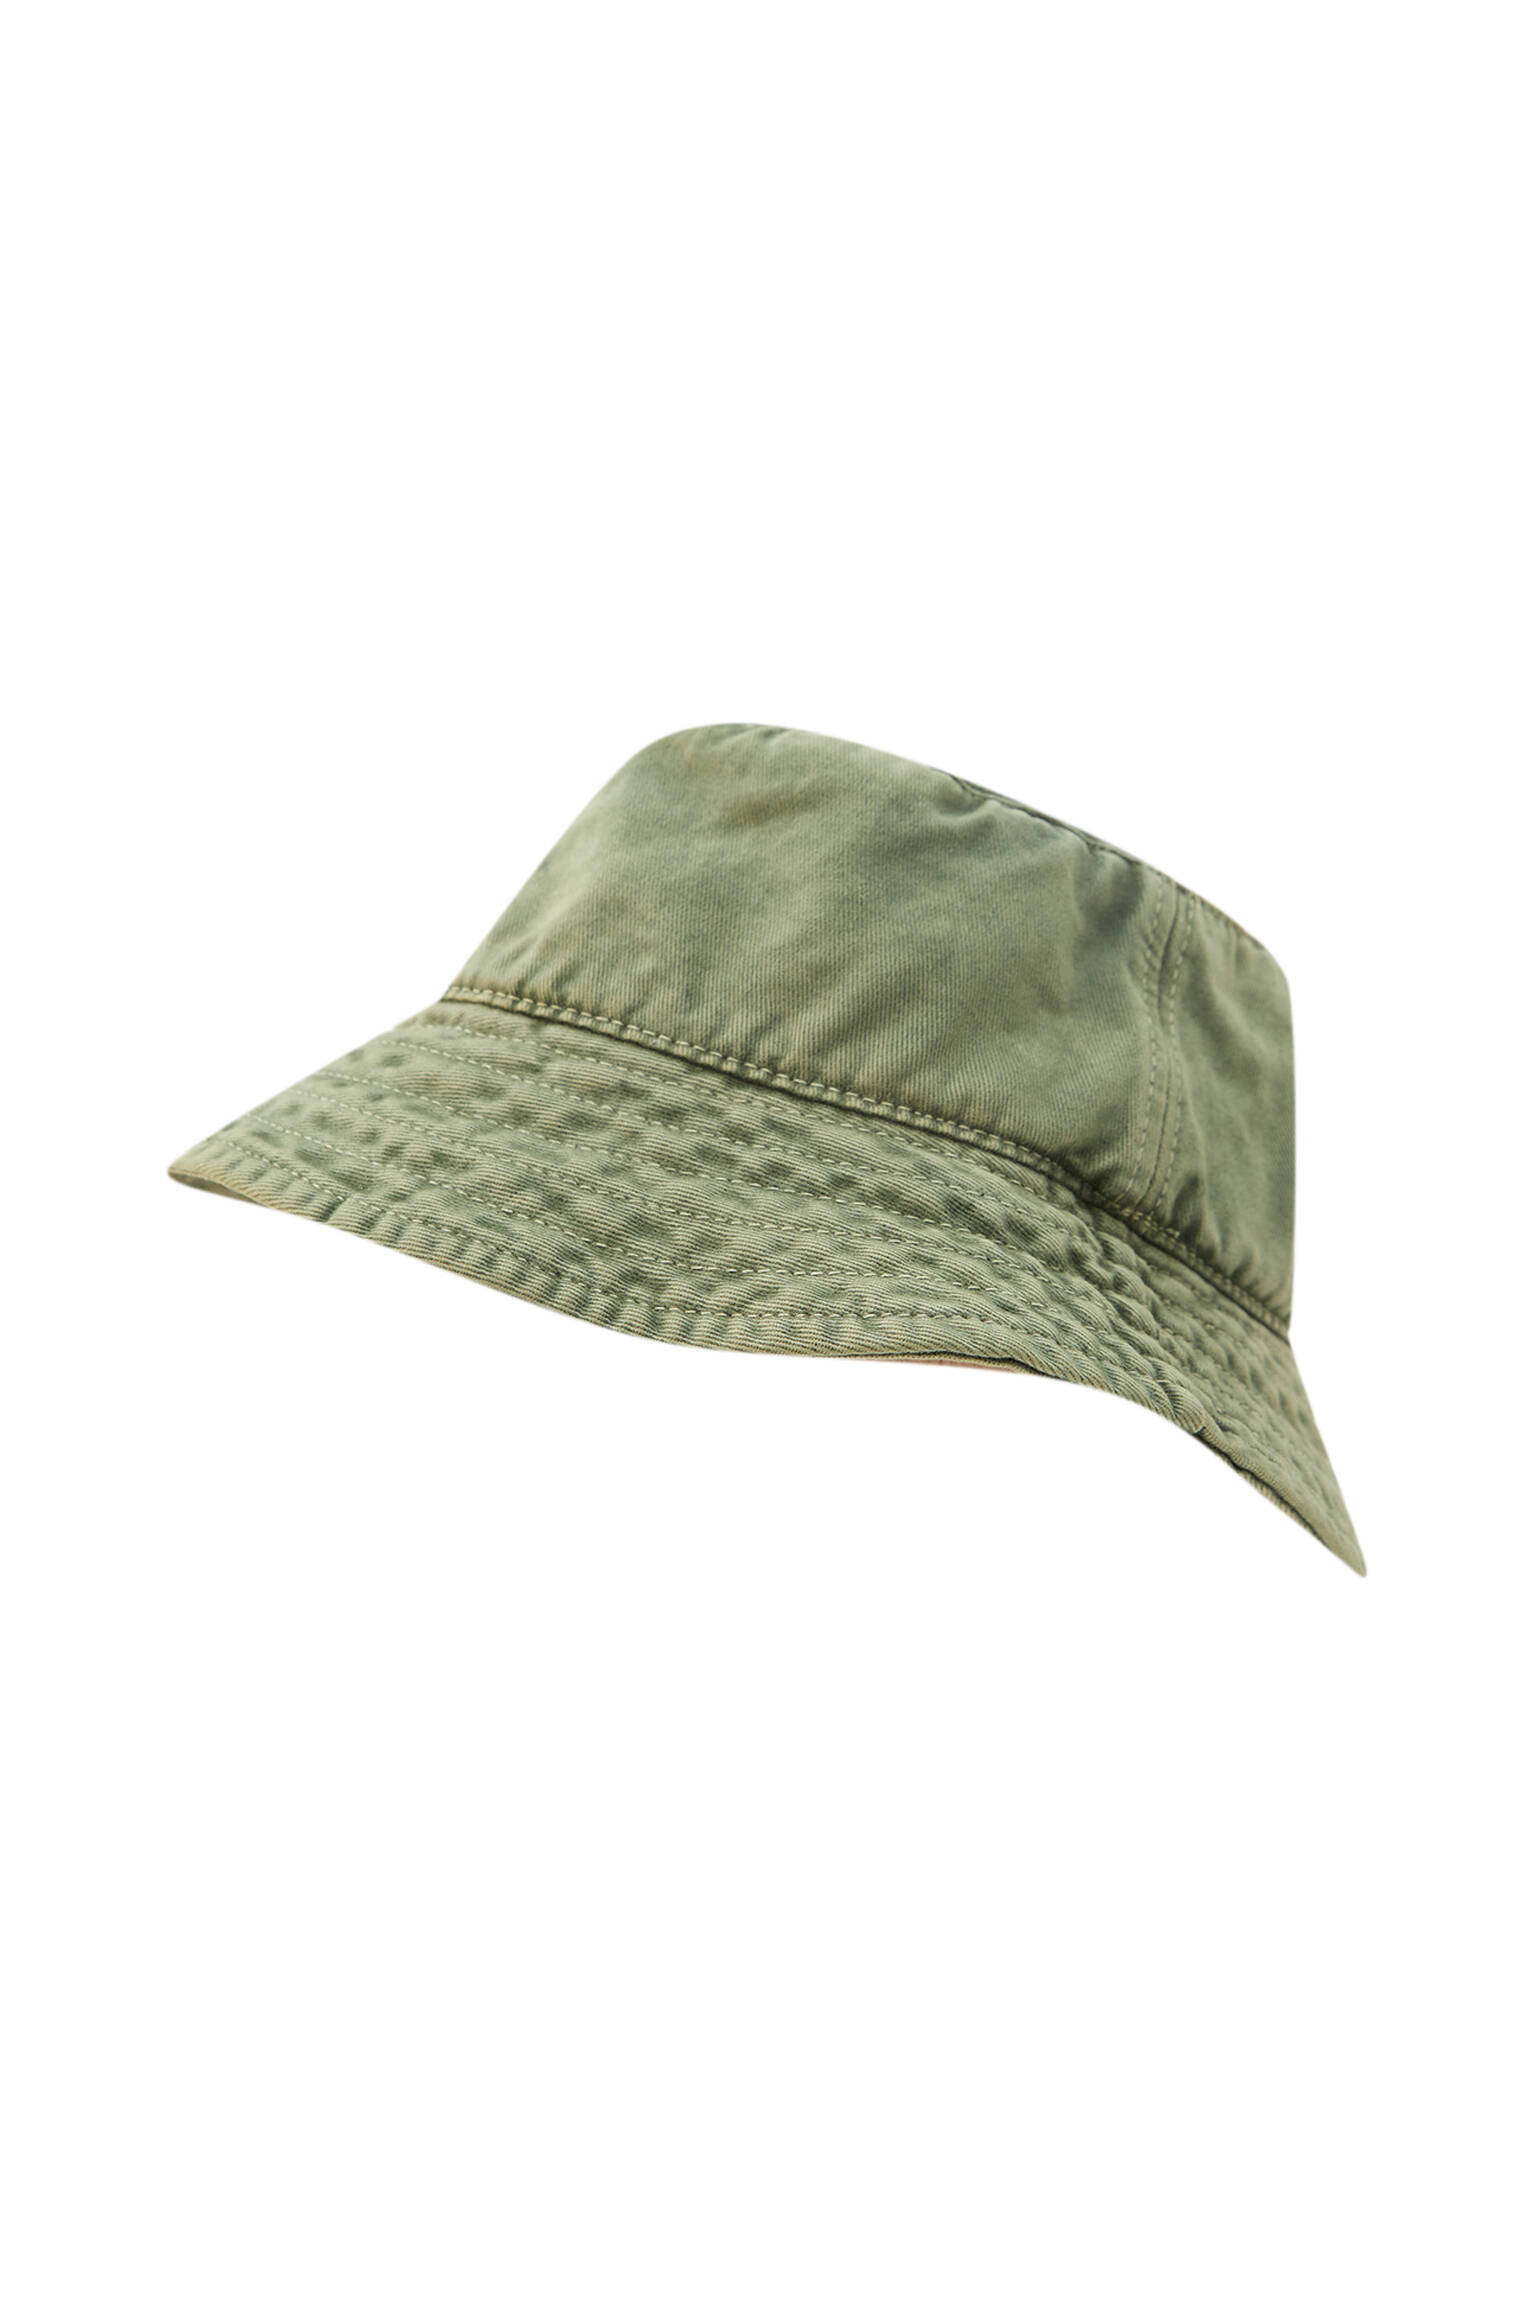 Шляпа из хлопковой ткани с эффектом потертости ХАКИ Pull & Bear